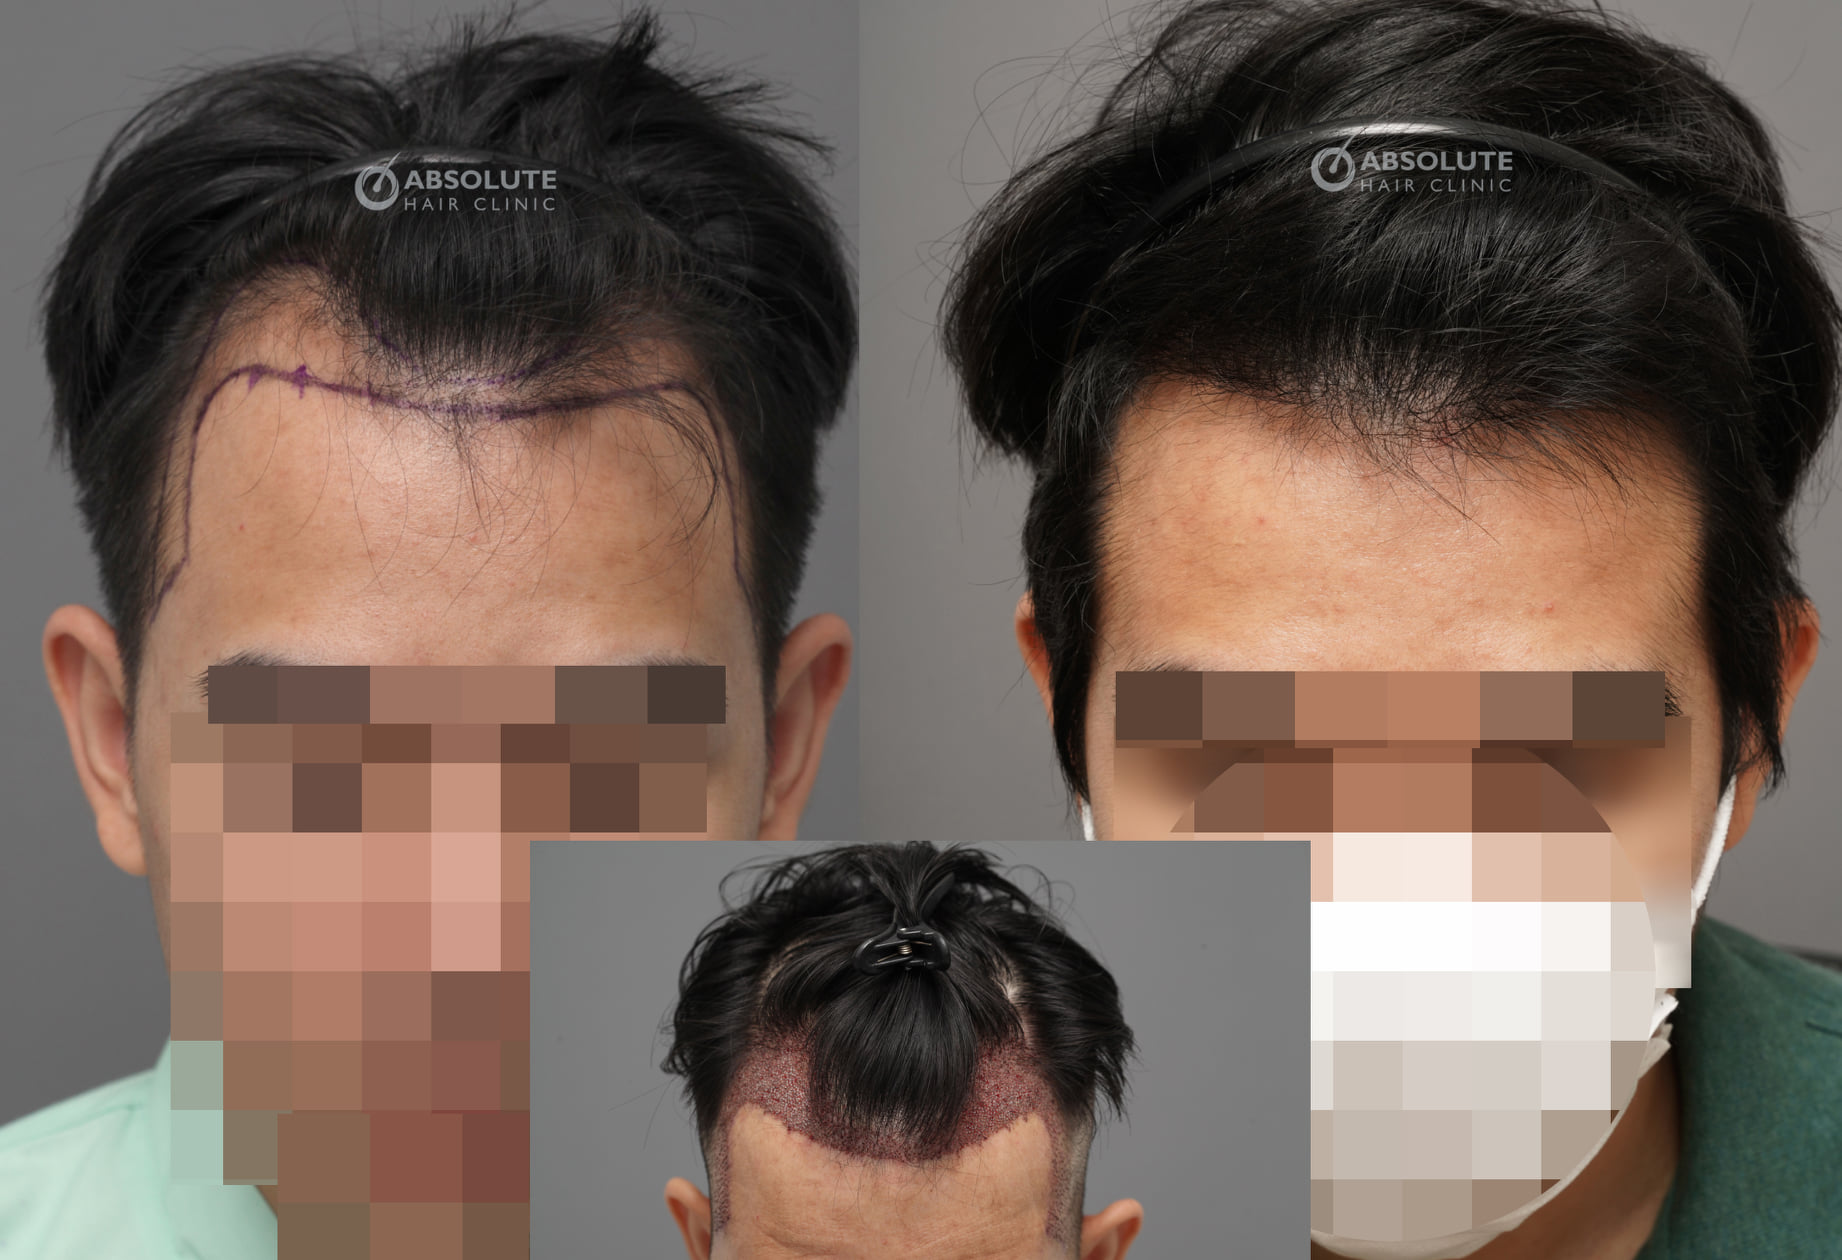 Cấy tóc FUE 2100 nang trị hói chữ M sau 5 tháng - case 83